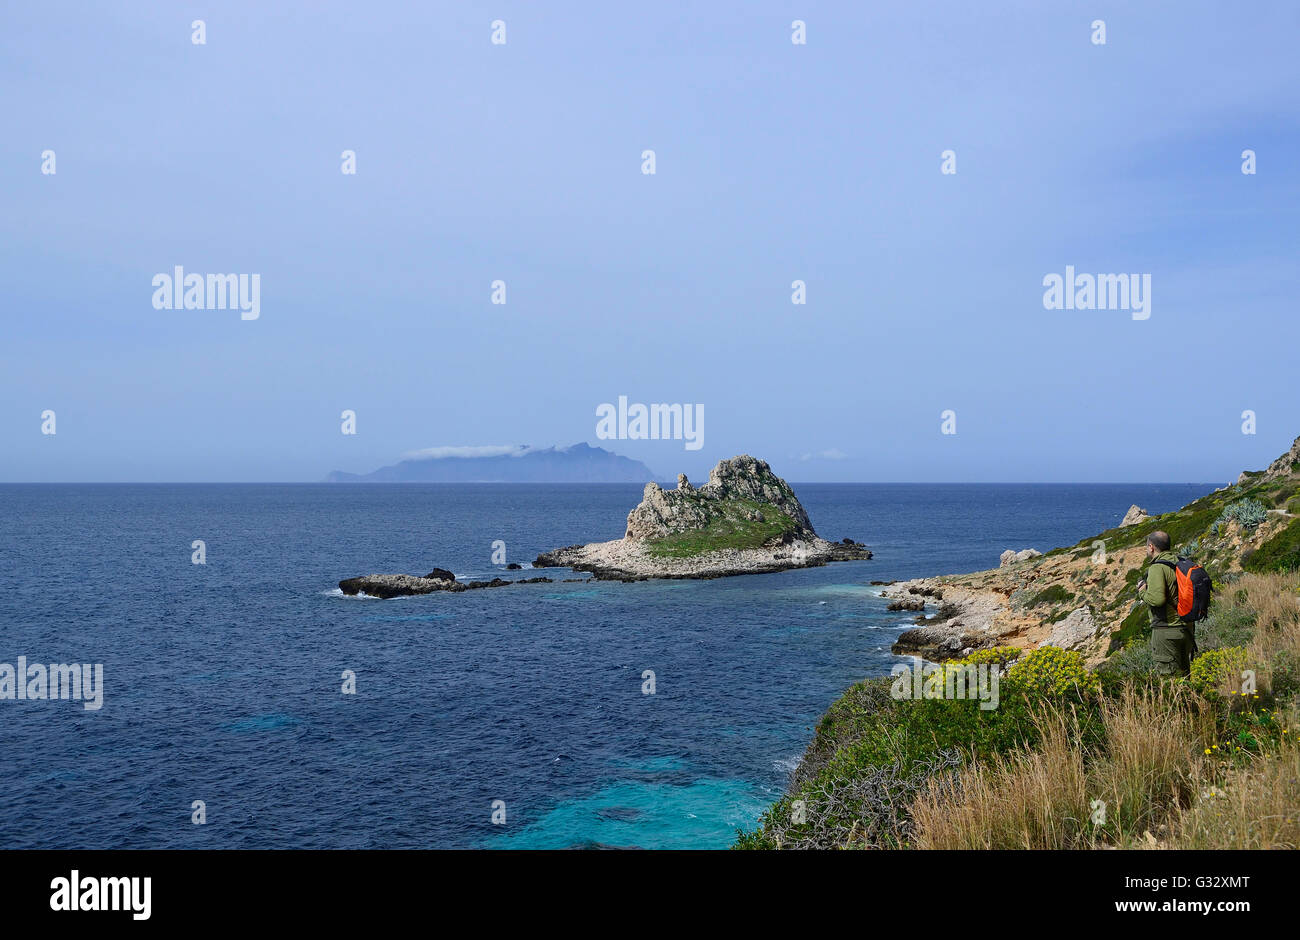 Tally, Sicilia, las islas Egadi, isla de Levanzo, caminante en una senda costera con vistas al mar con isla Faraglione en segundo plano. Foto de stock